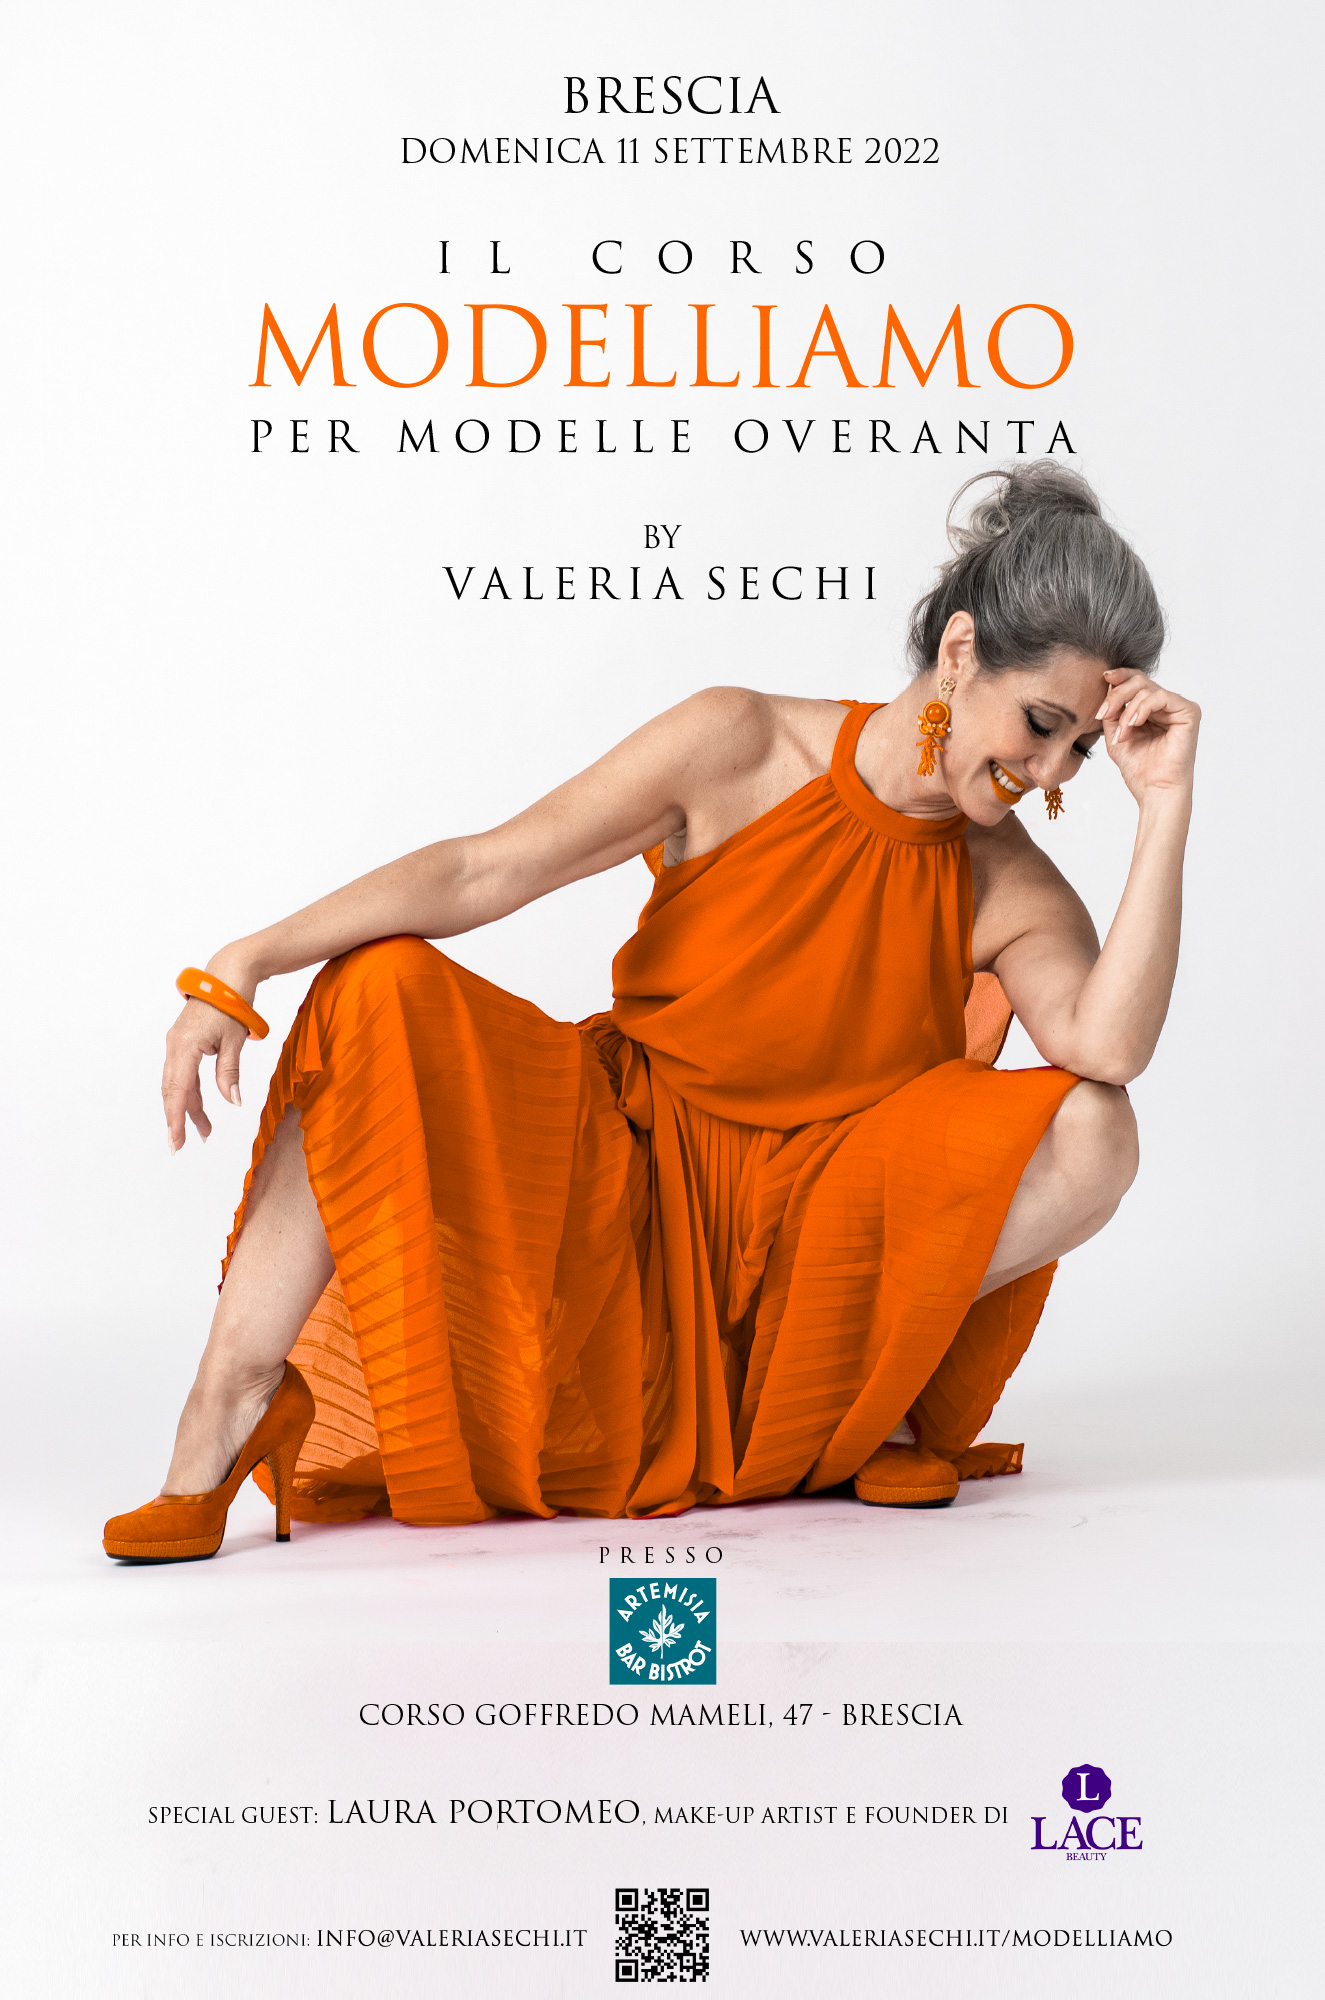 Locandina della terza edizione di Modelliamo, che si terrà a Brescia l'11 settembre 2022. In copertina, Valeria Sechi che indossa un abito da sera arancione